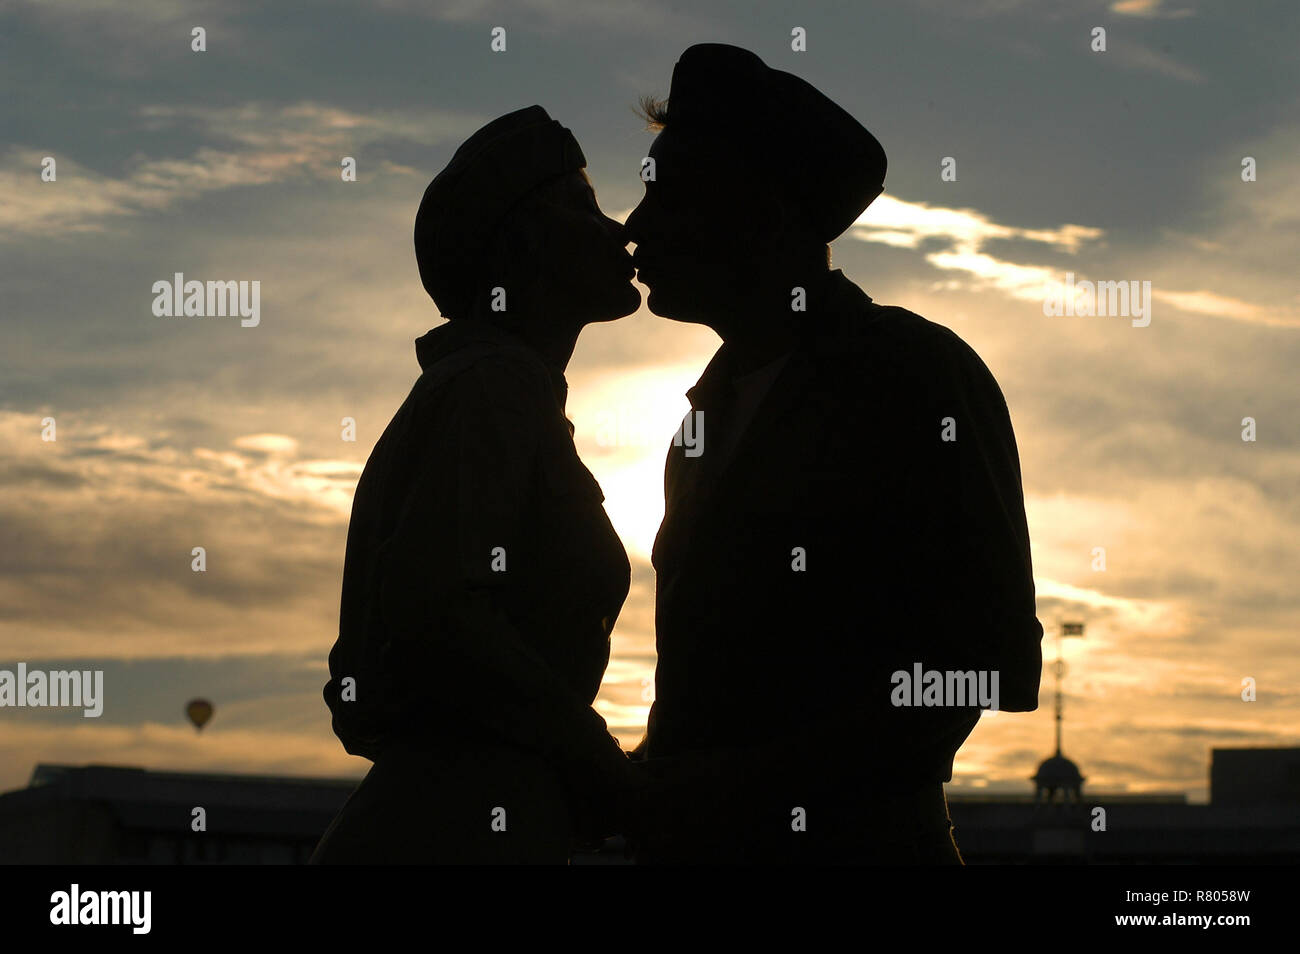 Secret kiss immagini e fotografie stock ad alta risoluzione - Alamy